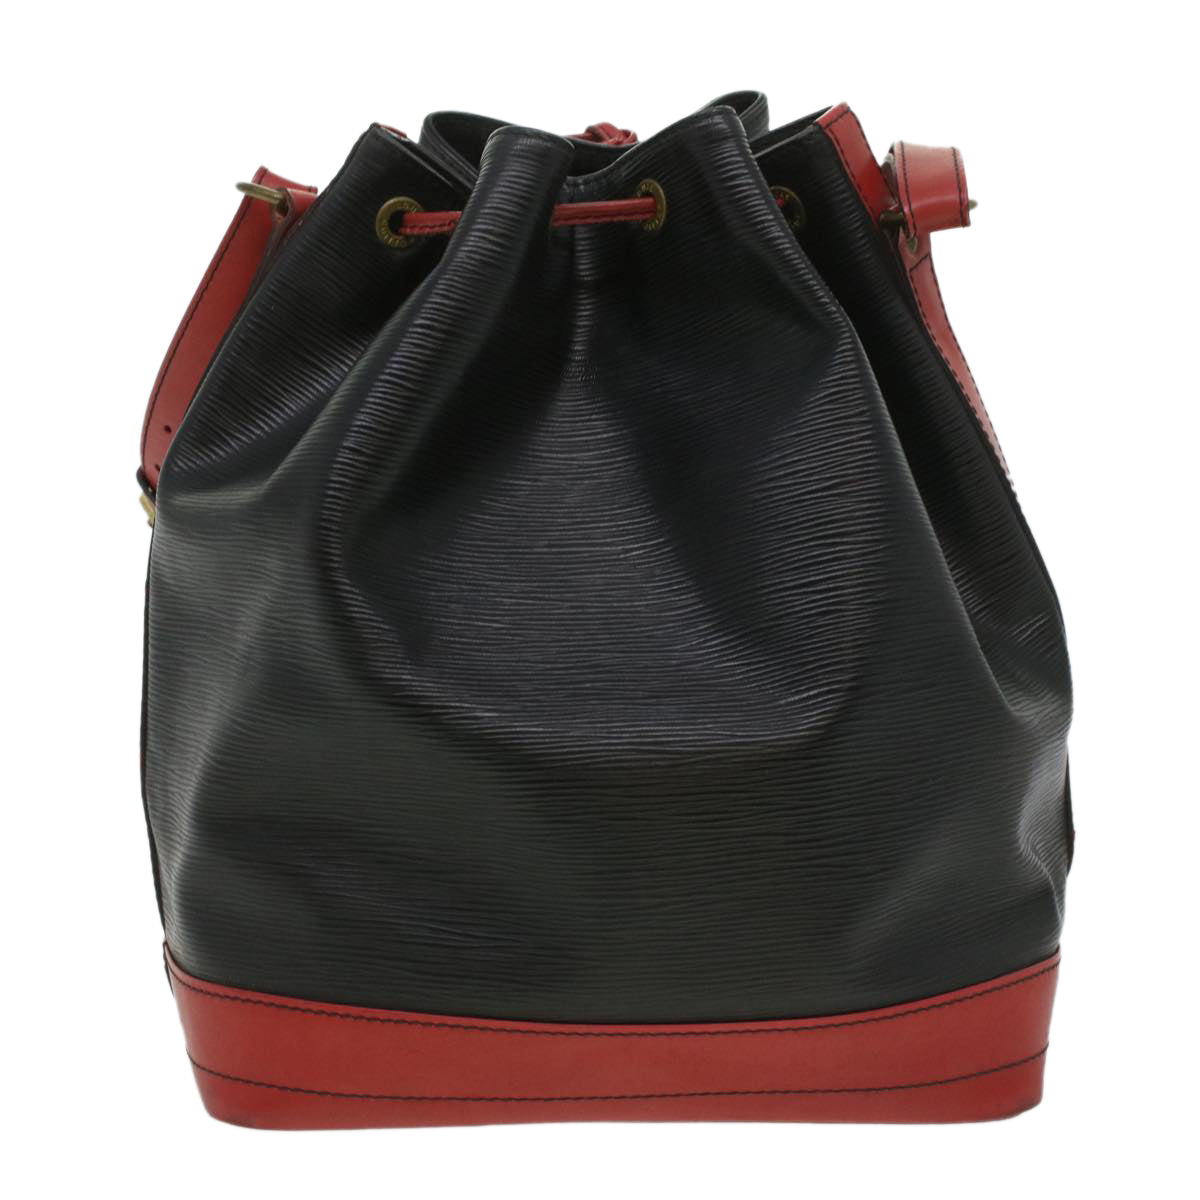 LOUIS VUITTON Epi By color Noe Shoulder Bag Black Red M44017 LV Auth 33205 - 0